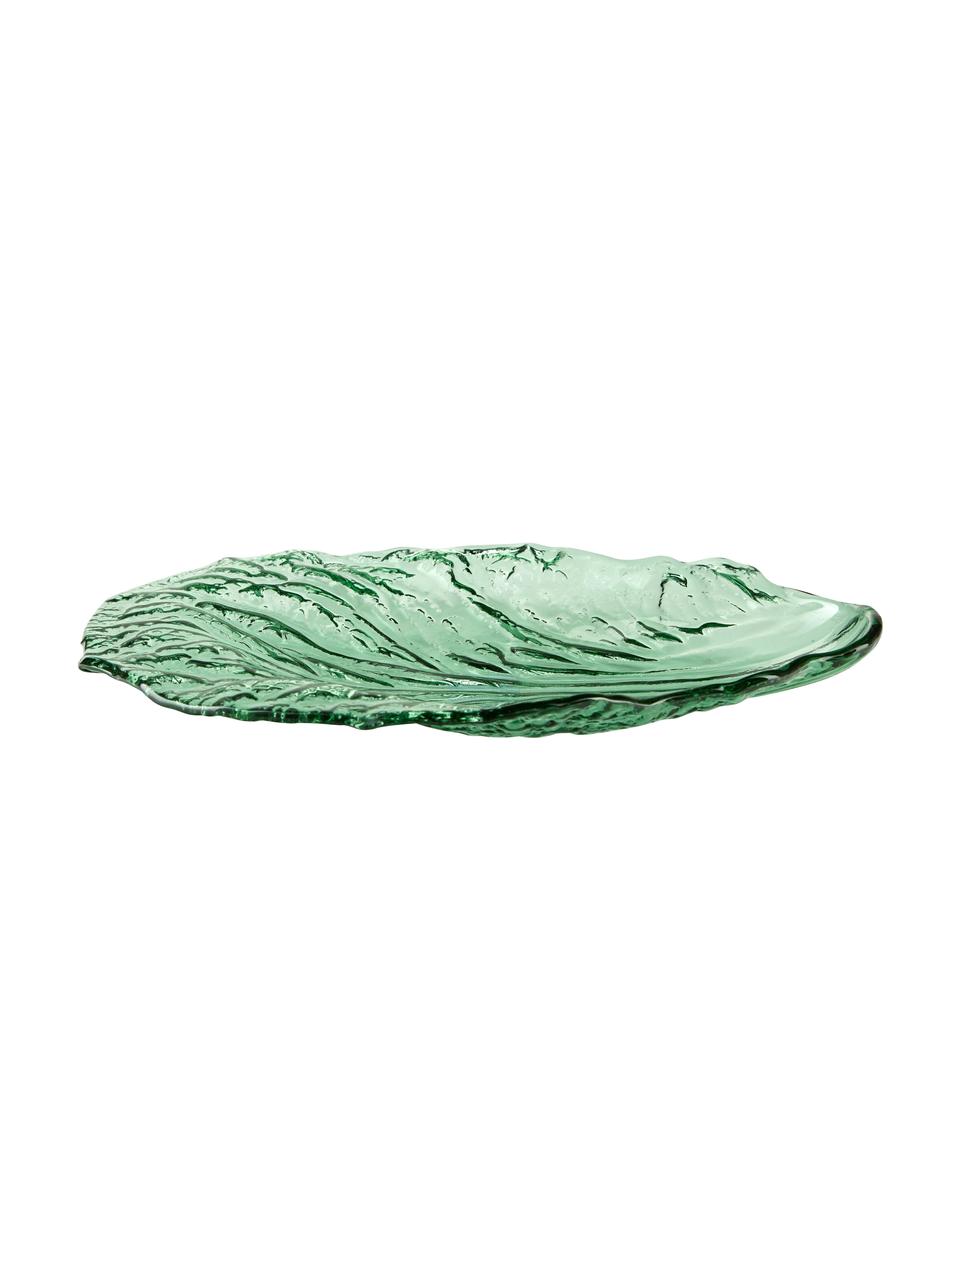 Piatto da portata in vetro verde Leaf, lung. 28 x larg. 18 cm, Vetro, Verde trasparente, Lung. 28 x Larg. 18 cm